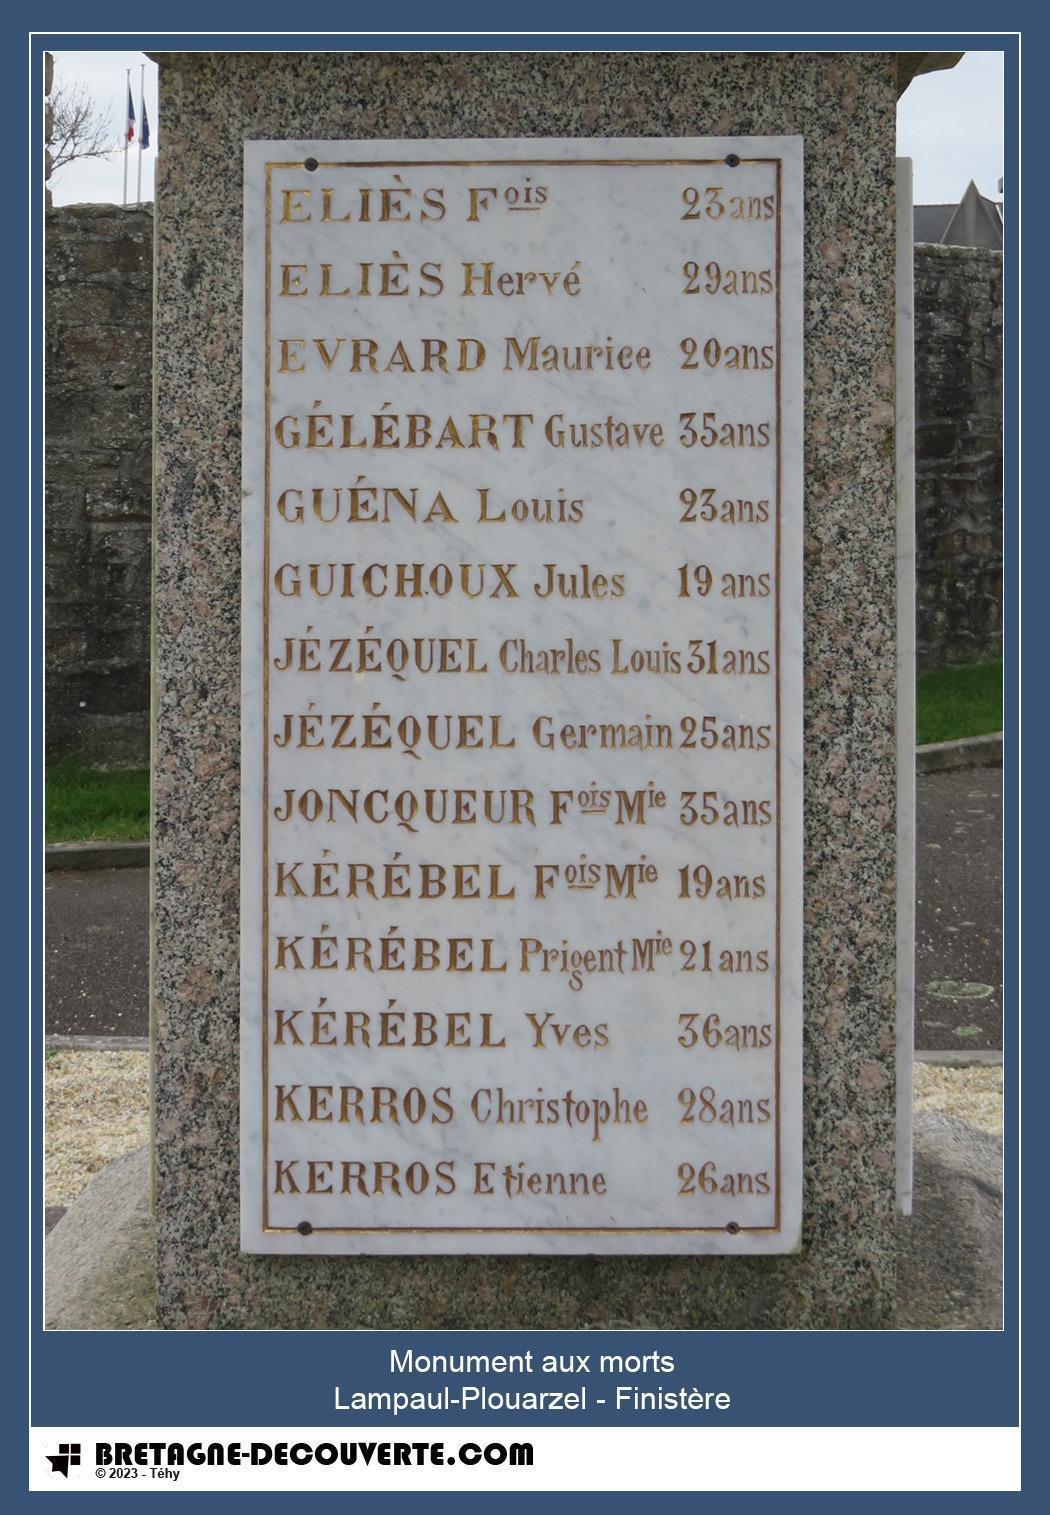 Les noms gravés sur le monument aux morts de Lampaul-Plouarzel